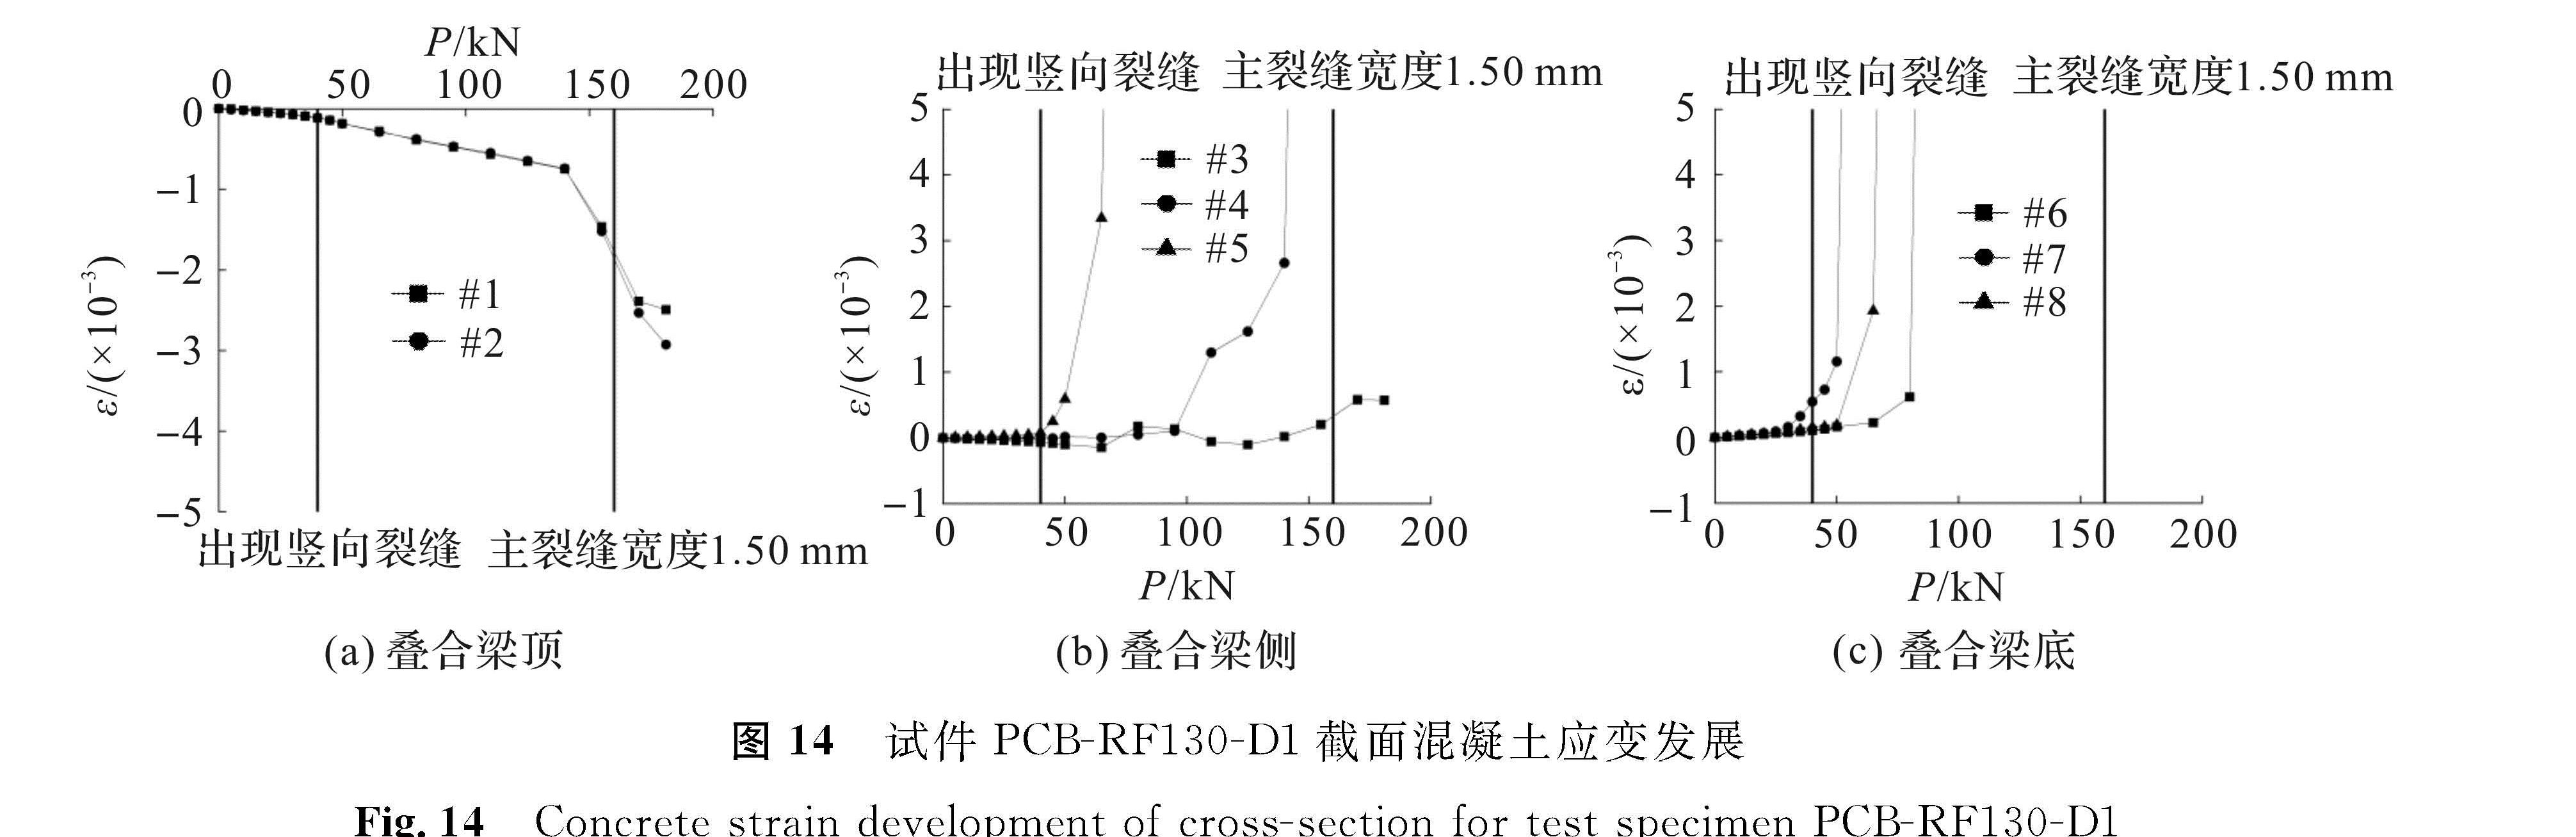 图 14 试件PCB-RF130-D1截面混凝土应变发展<br/>Fig.14 Concrete strain development of cross-section for test specimen PCB-RF130-D1